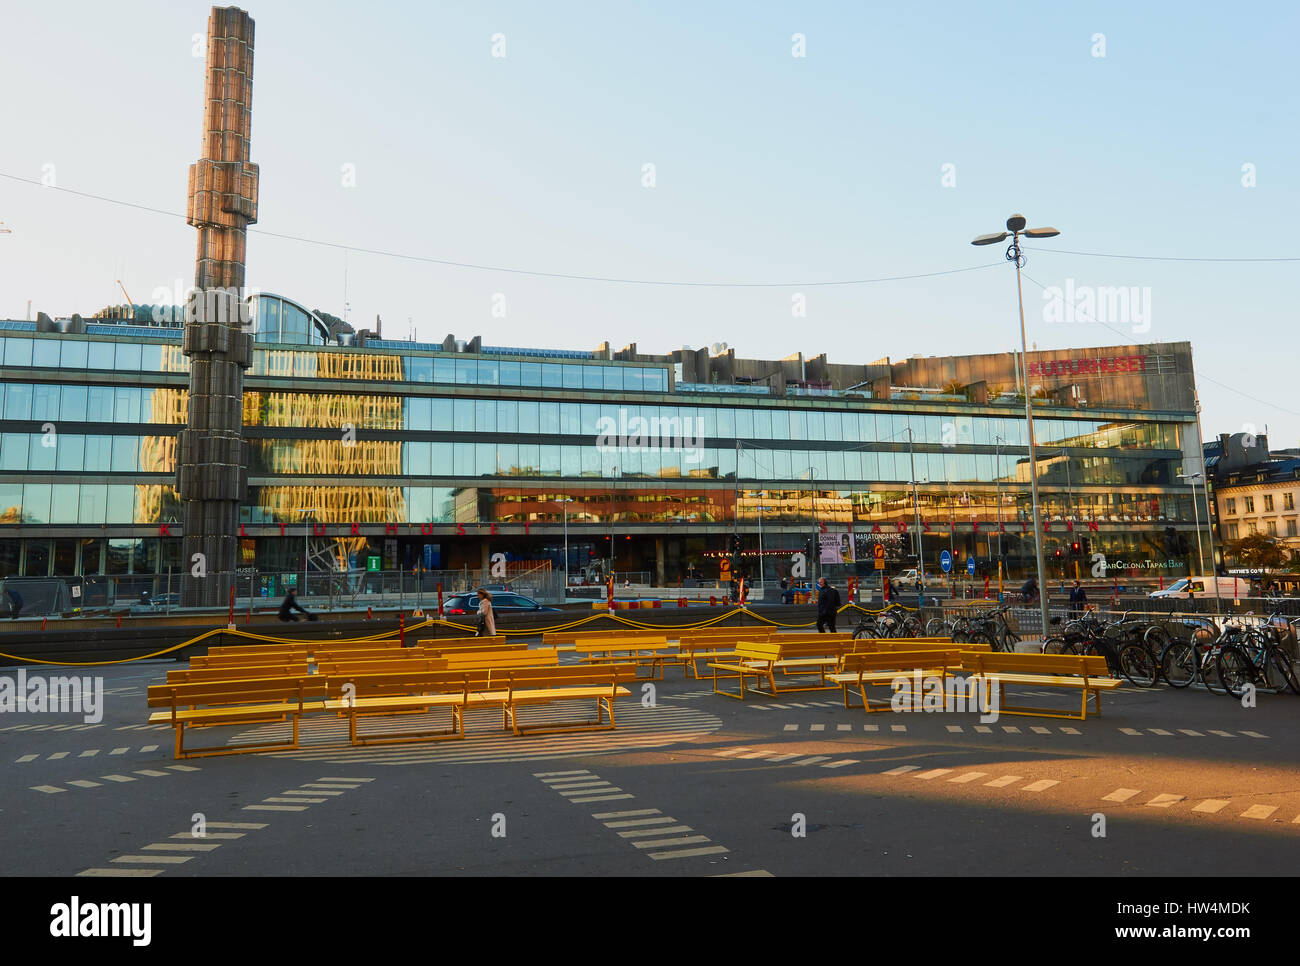 Glas Obelisk und gelb Sitze, Sergels Torg, Stockholm, Schweden, Scandinavia Stockfoto